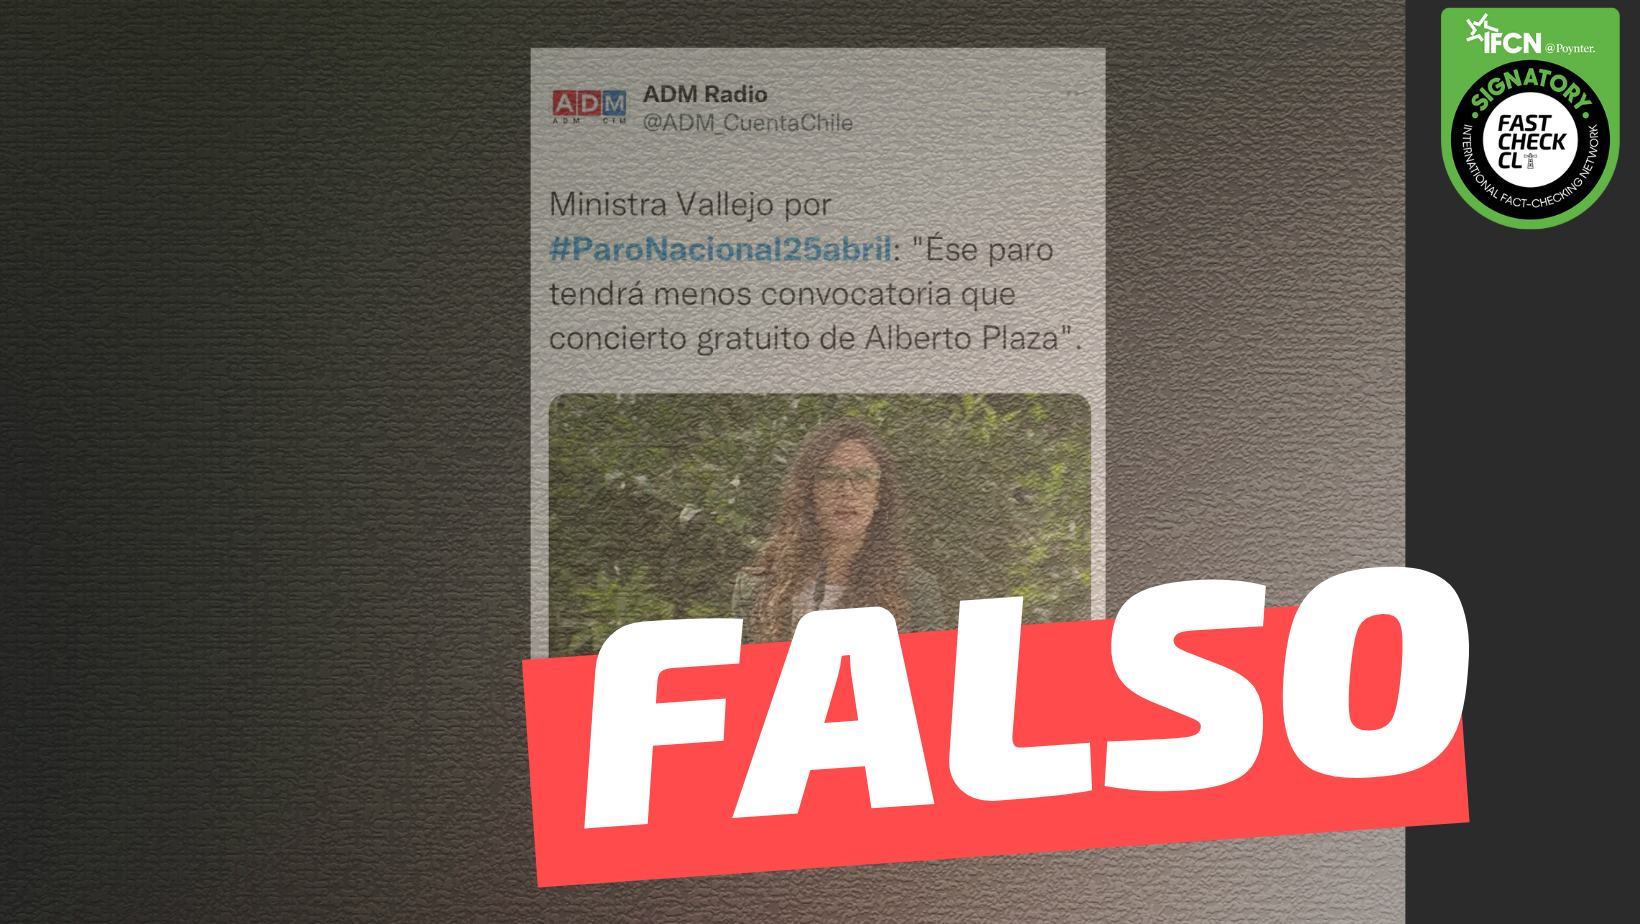 Read more about the article Ministra Vallejo por Paro Nacional 25 de abril: “Ese paro tendrá menos convocatoria que concierto gratuito de Alberto Plaza”: #Falso